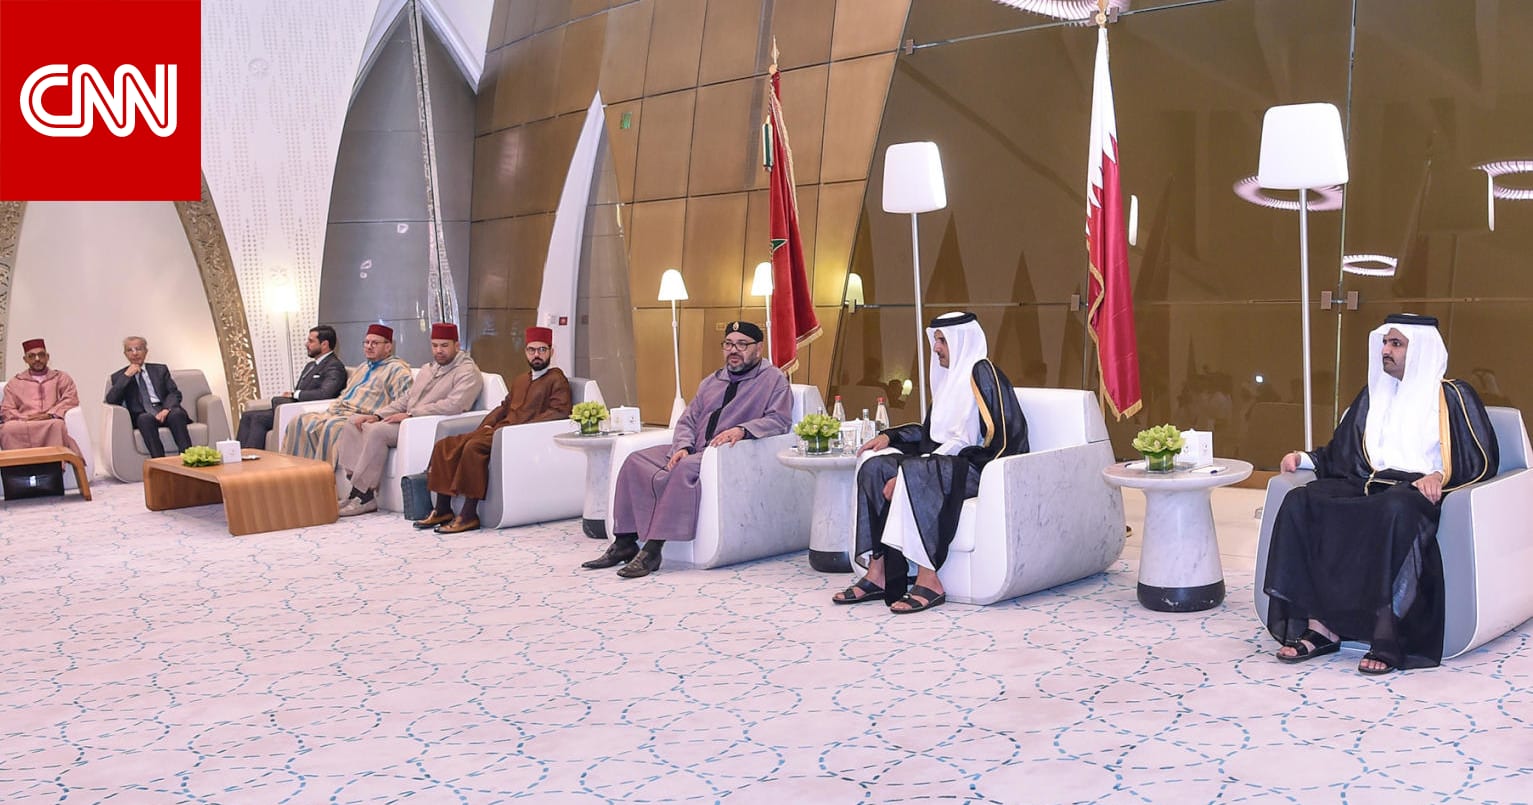 صورة مفبركة لملك المغرب ينحاز فيها الى قطر تشعل مواقع التواصل والدوحة تعلق Cnn Arabic